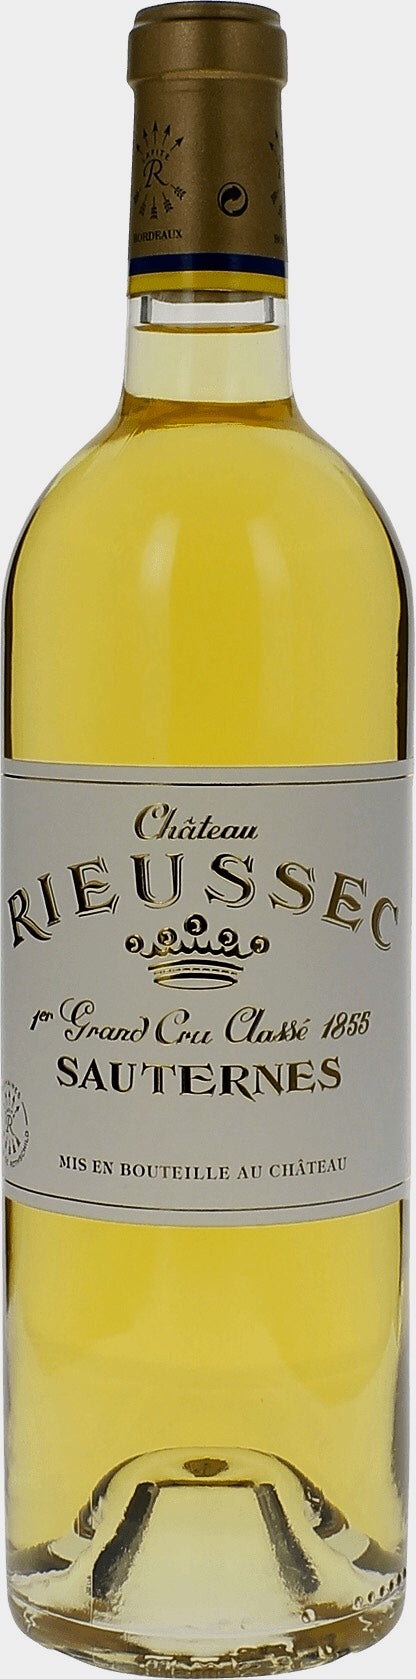 2017 Chateau Rieussec, Sauternes, 375 ml